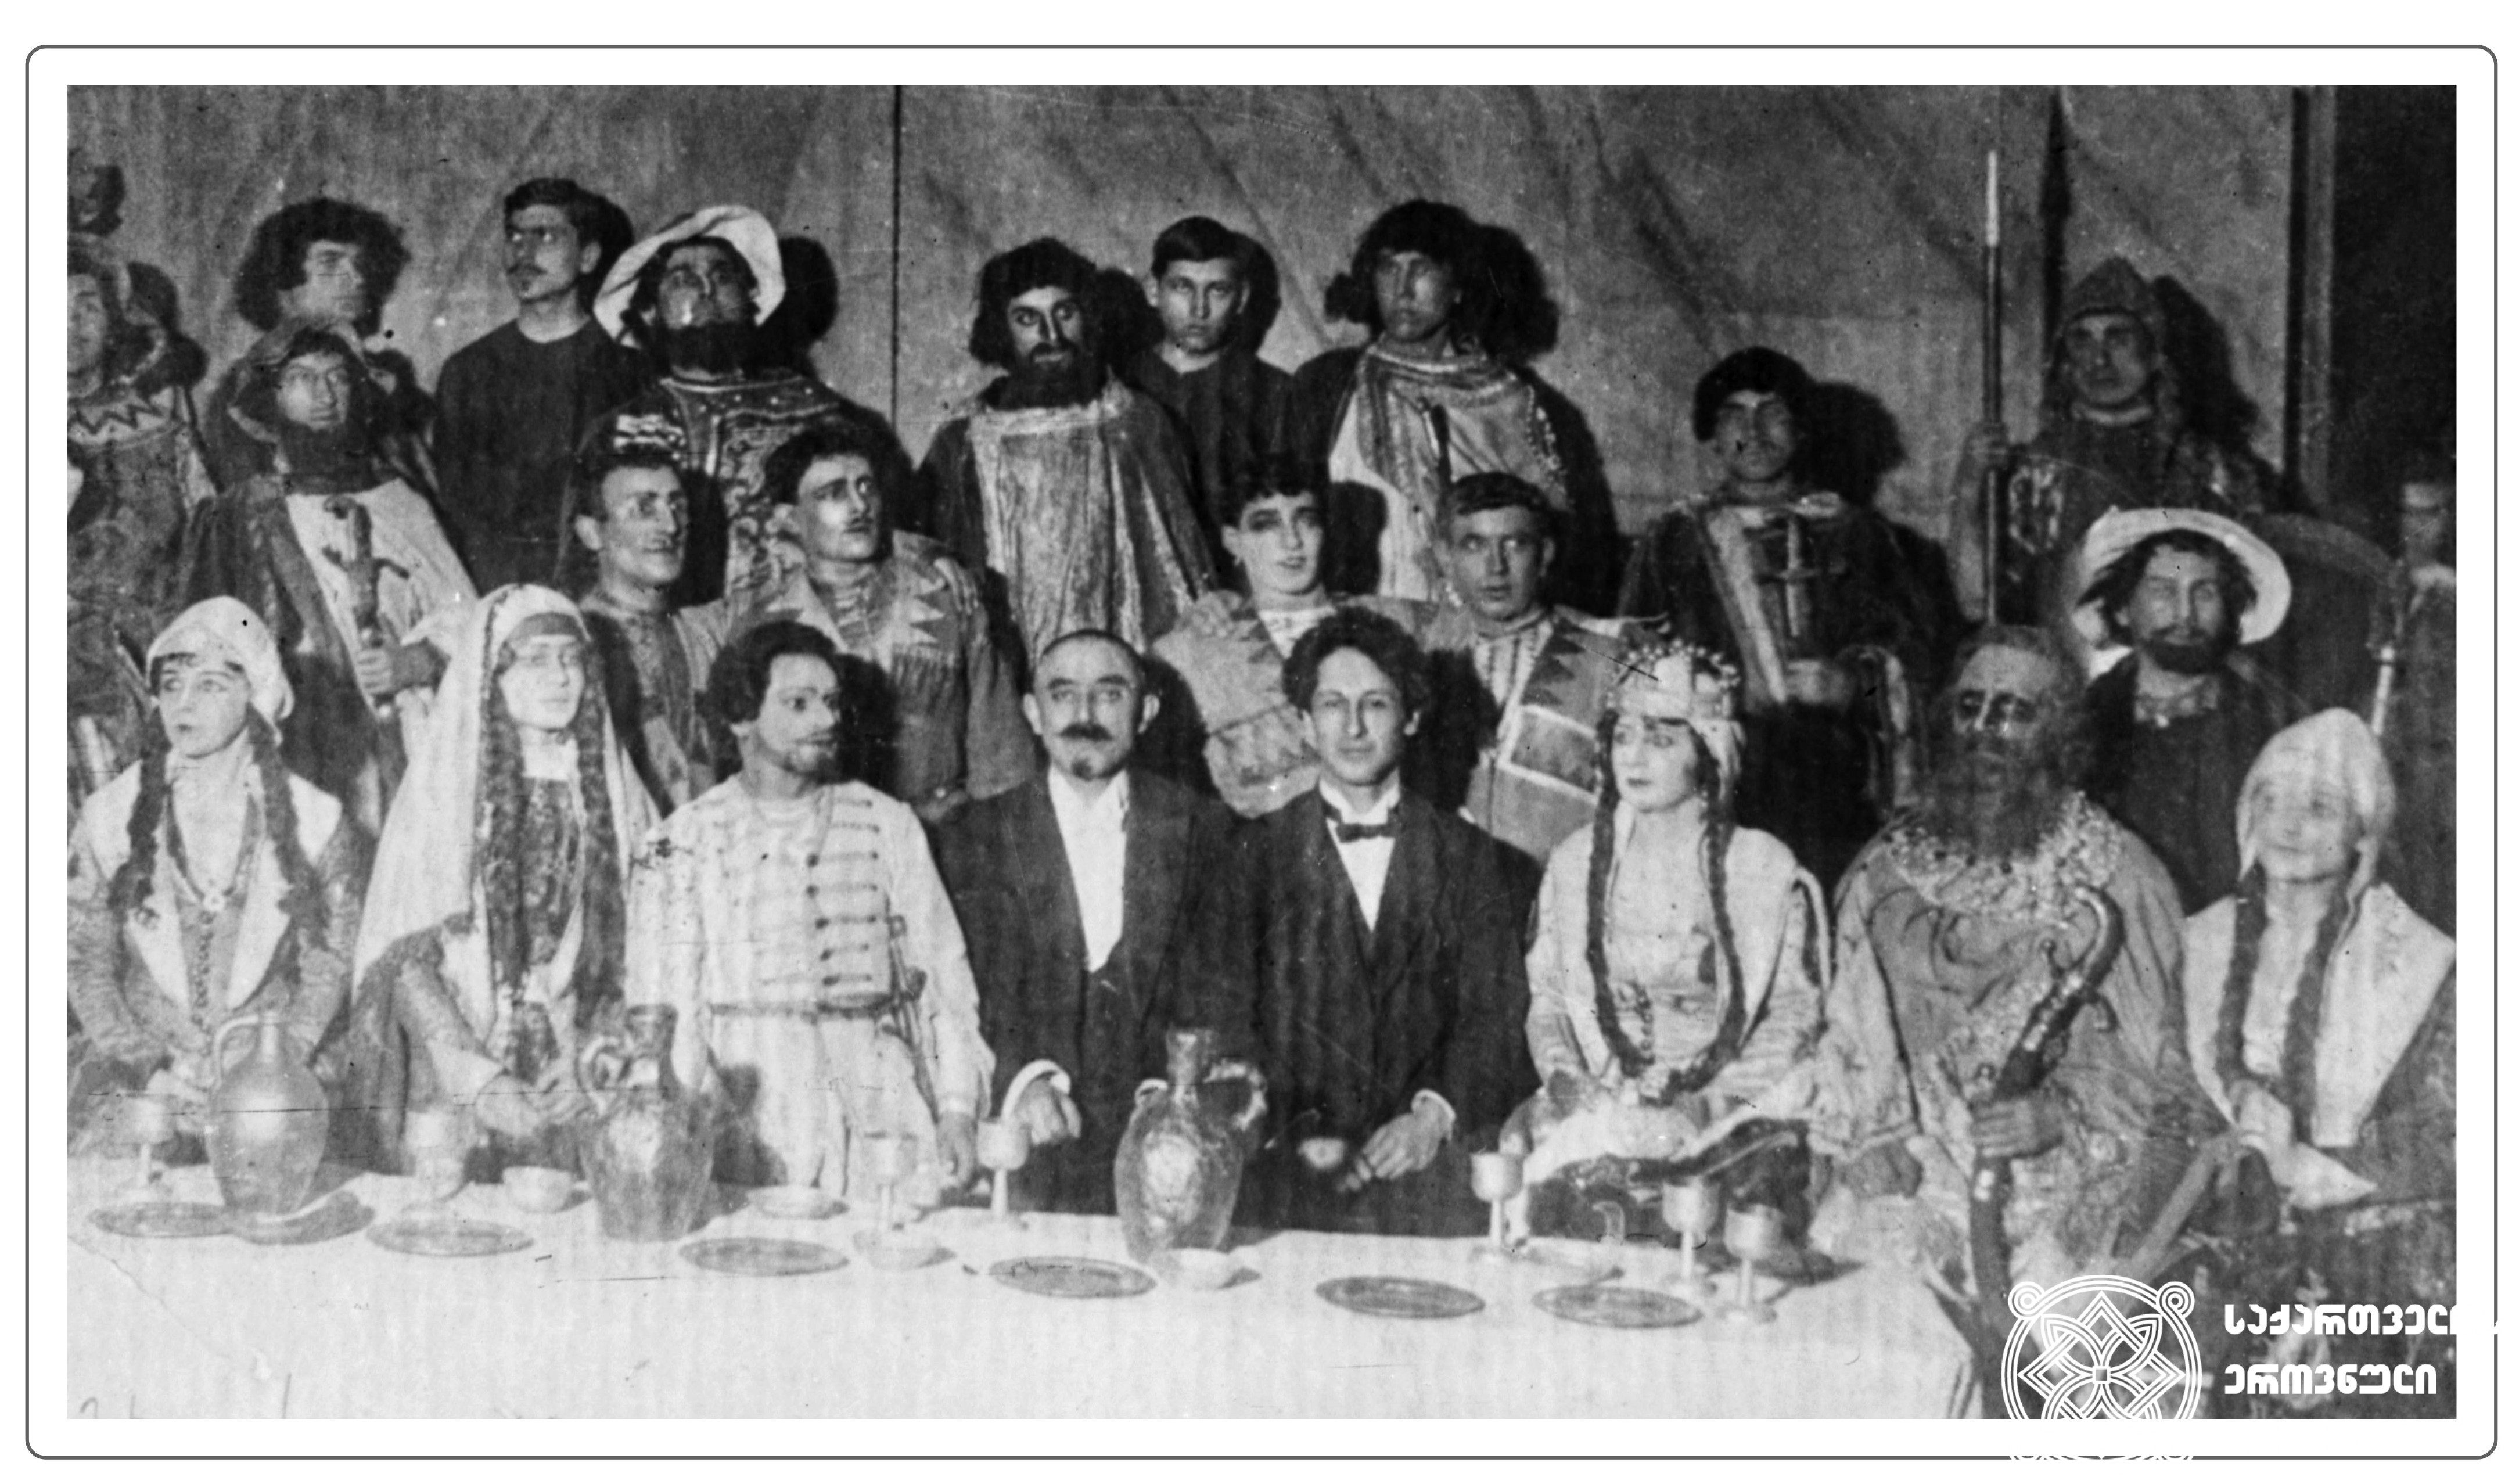 ზაქარია ფალიაშვილის ოპერა „აბესალომ და ეთერის“ პრემიერის შემდეგ გადაღებული ჯგუფური სურათი. <br>
ცენტრში, ოპერის მსახიობთა შორის, სხედან: ზაქარია ფალიაშვილი და ალექსანდრე წუწუნავა. <br>
1919 წელი, 21 თებერვალი. <br>

Group photo taken after the premiere of the opera “Abesalom and Eteri” by Zakaria Phaliashvili. <br>
Zakaria Phaliashvili and Alexandre Tsutsunava are sitting (in the center) among the opera artists. <br>
1919.